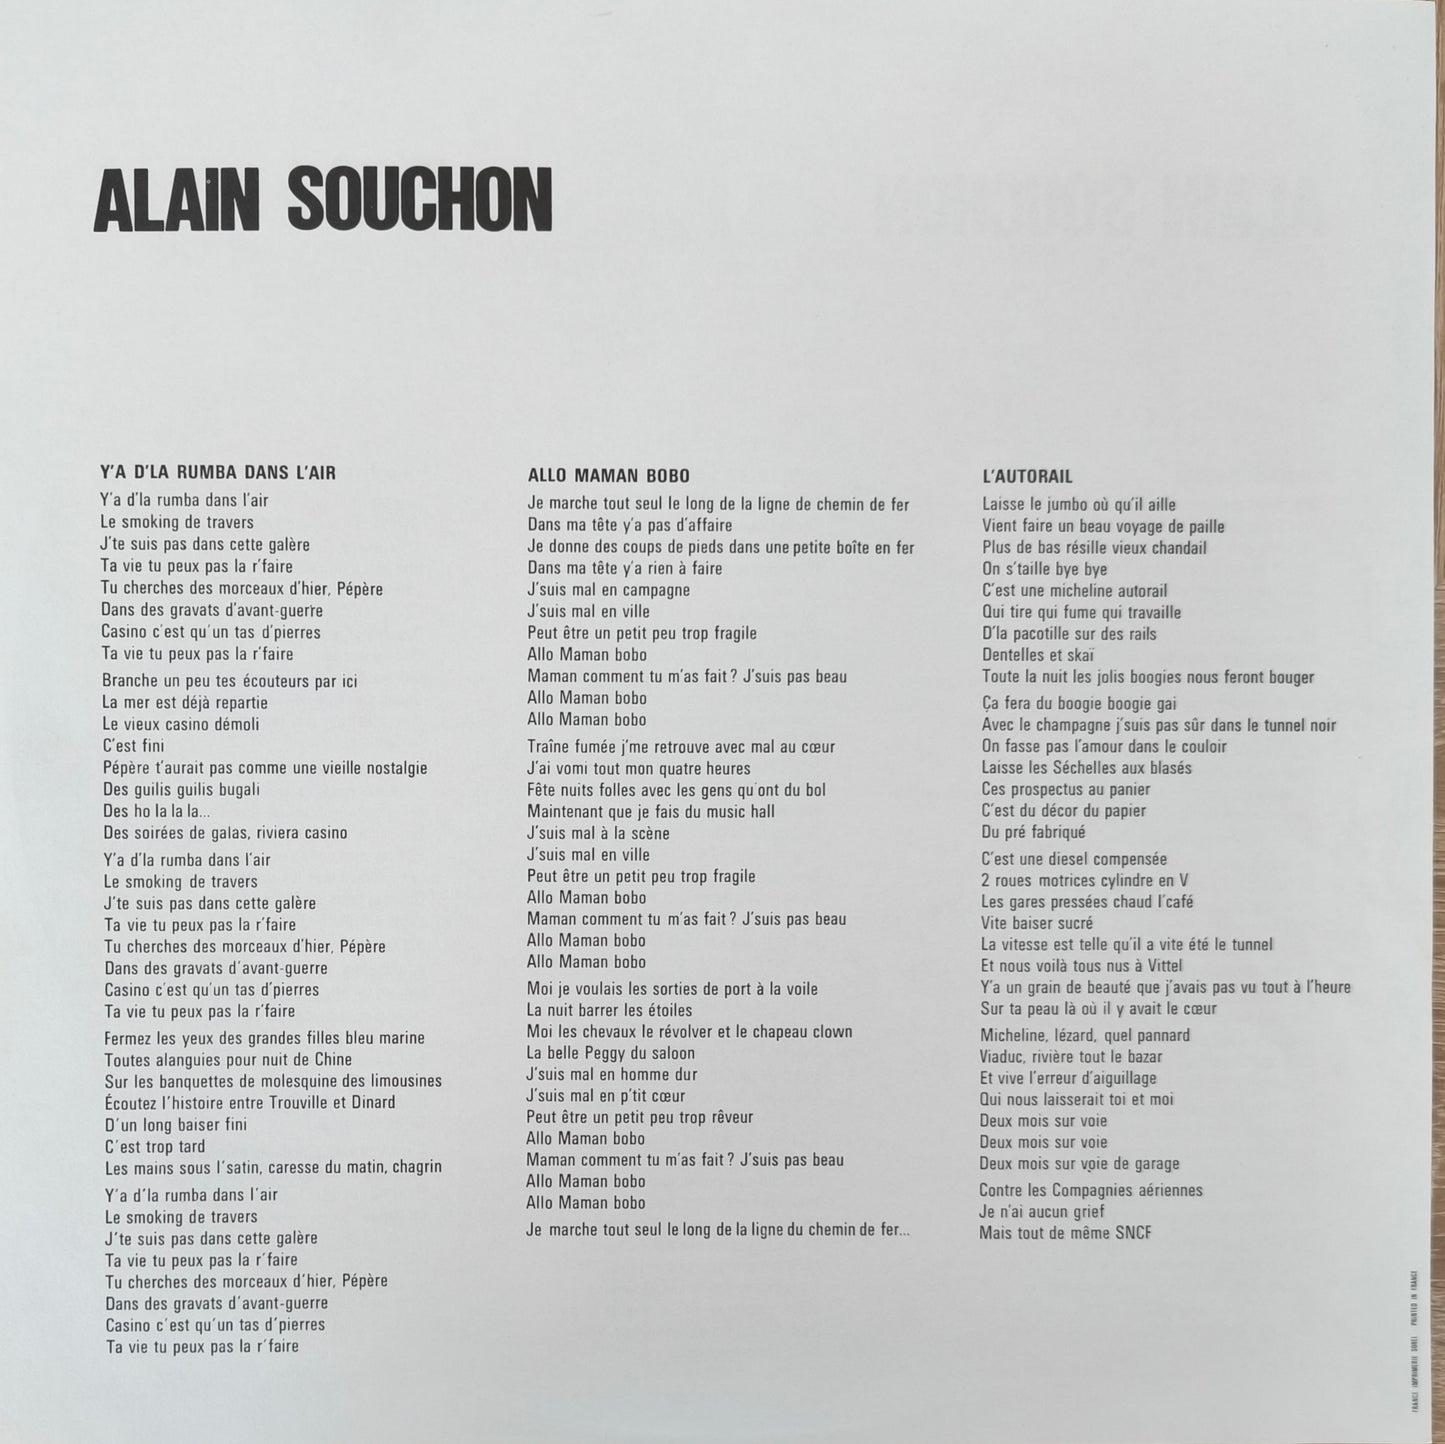 ALAIN SOUCHON - Jamais content